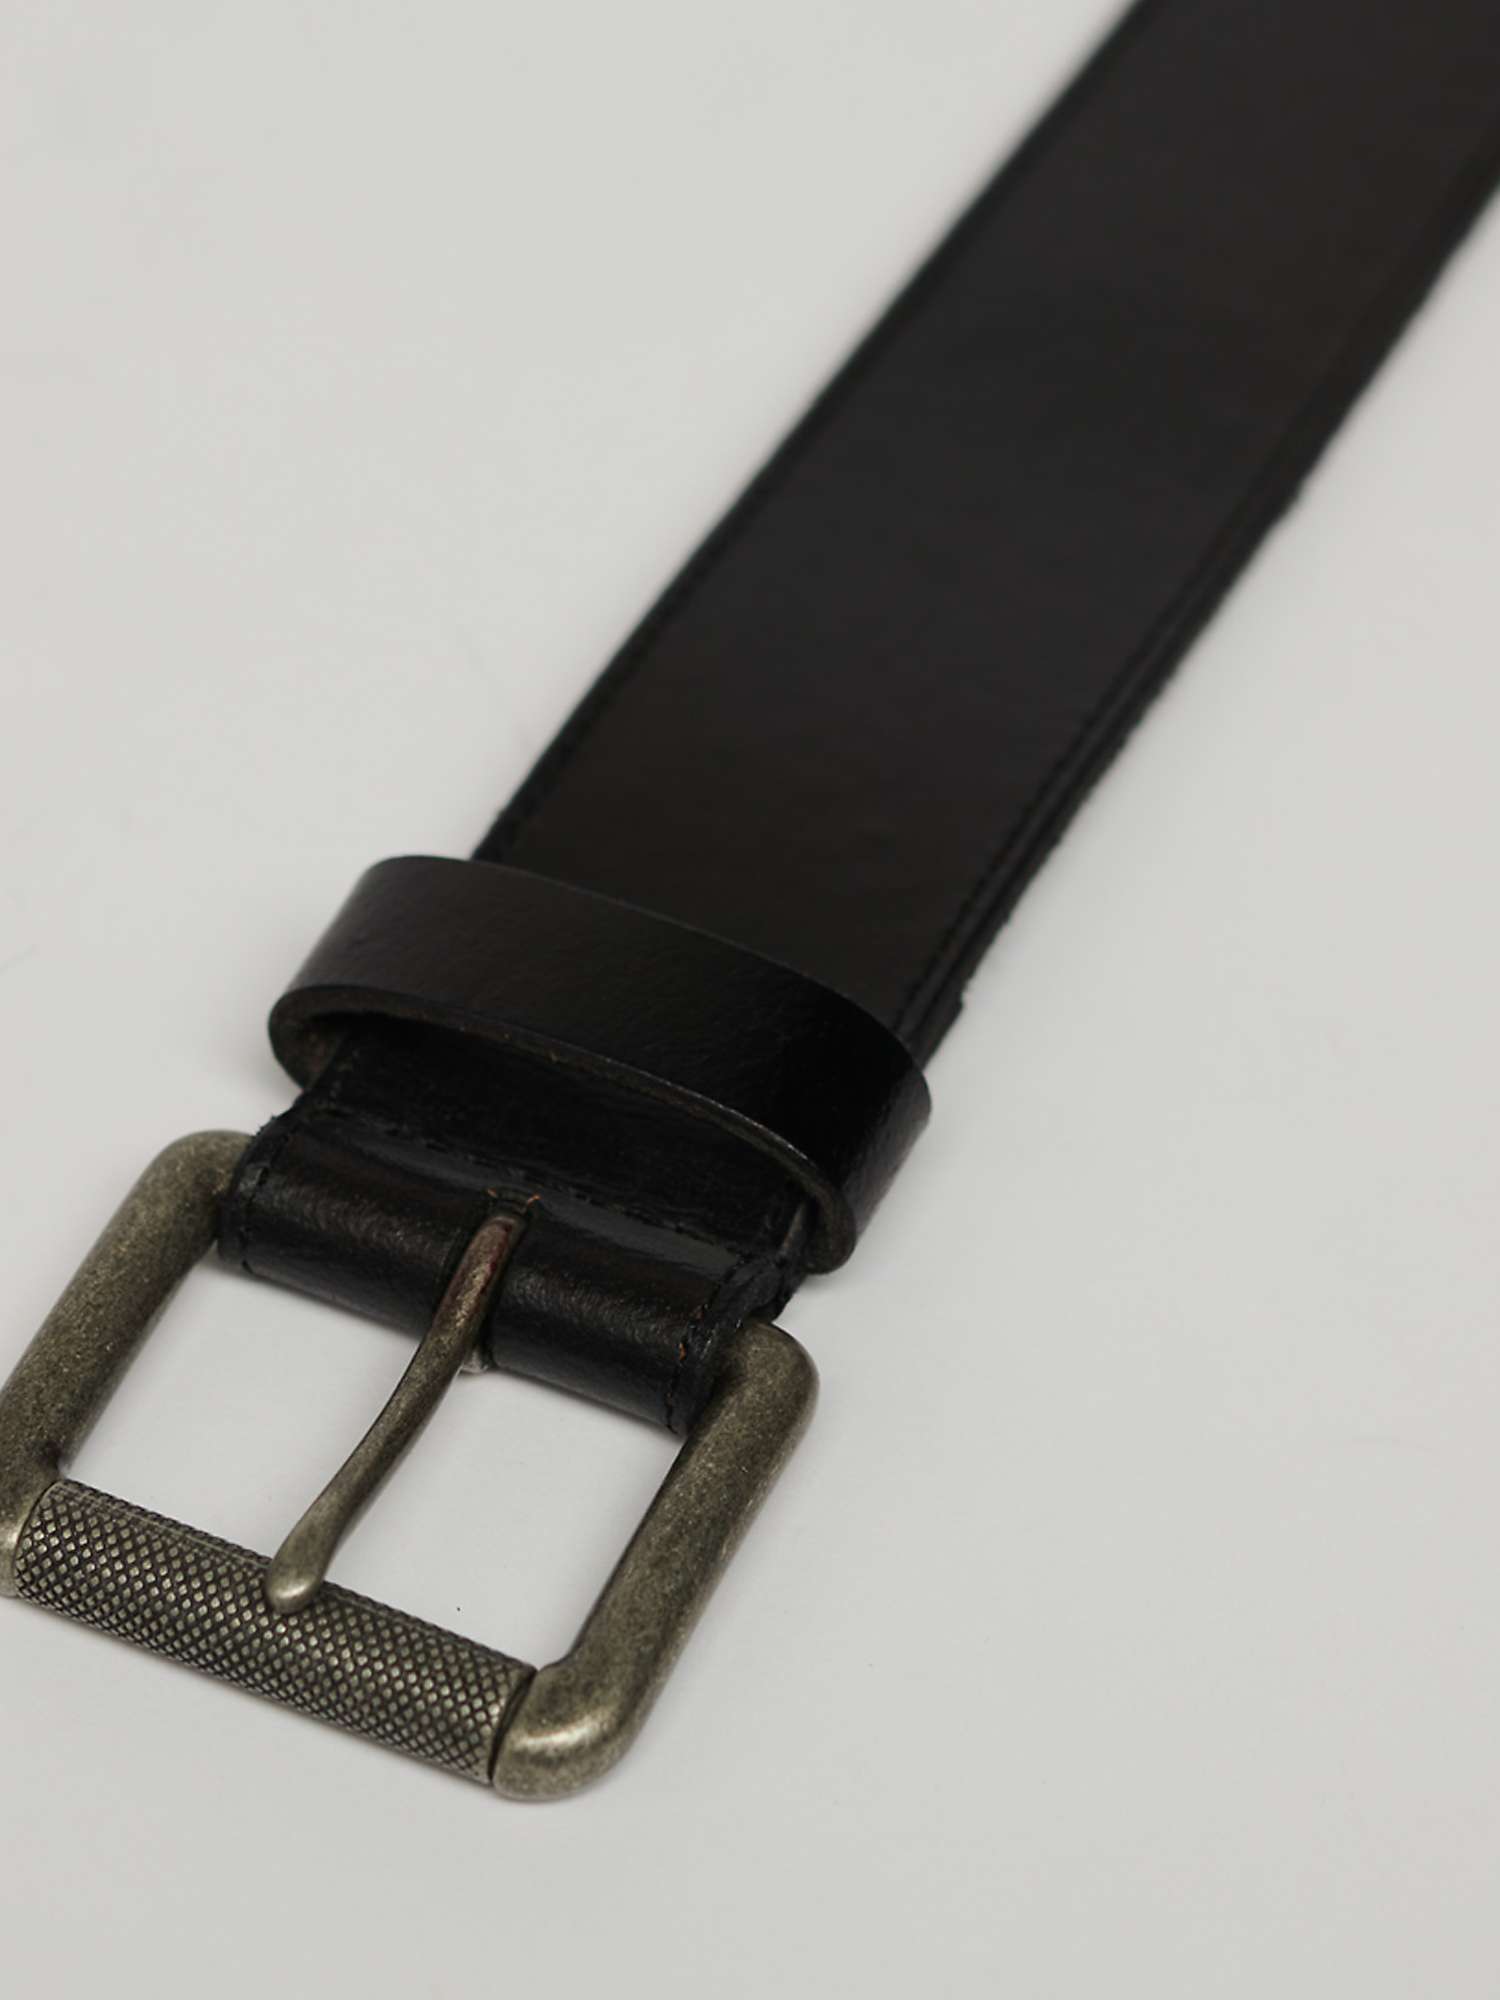 Buy Superdry Vintage Branded Belt Online at johnlewis.com